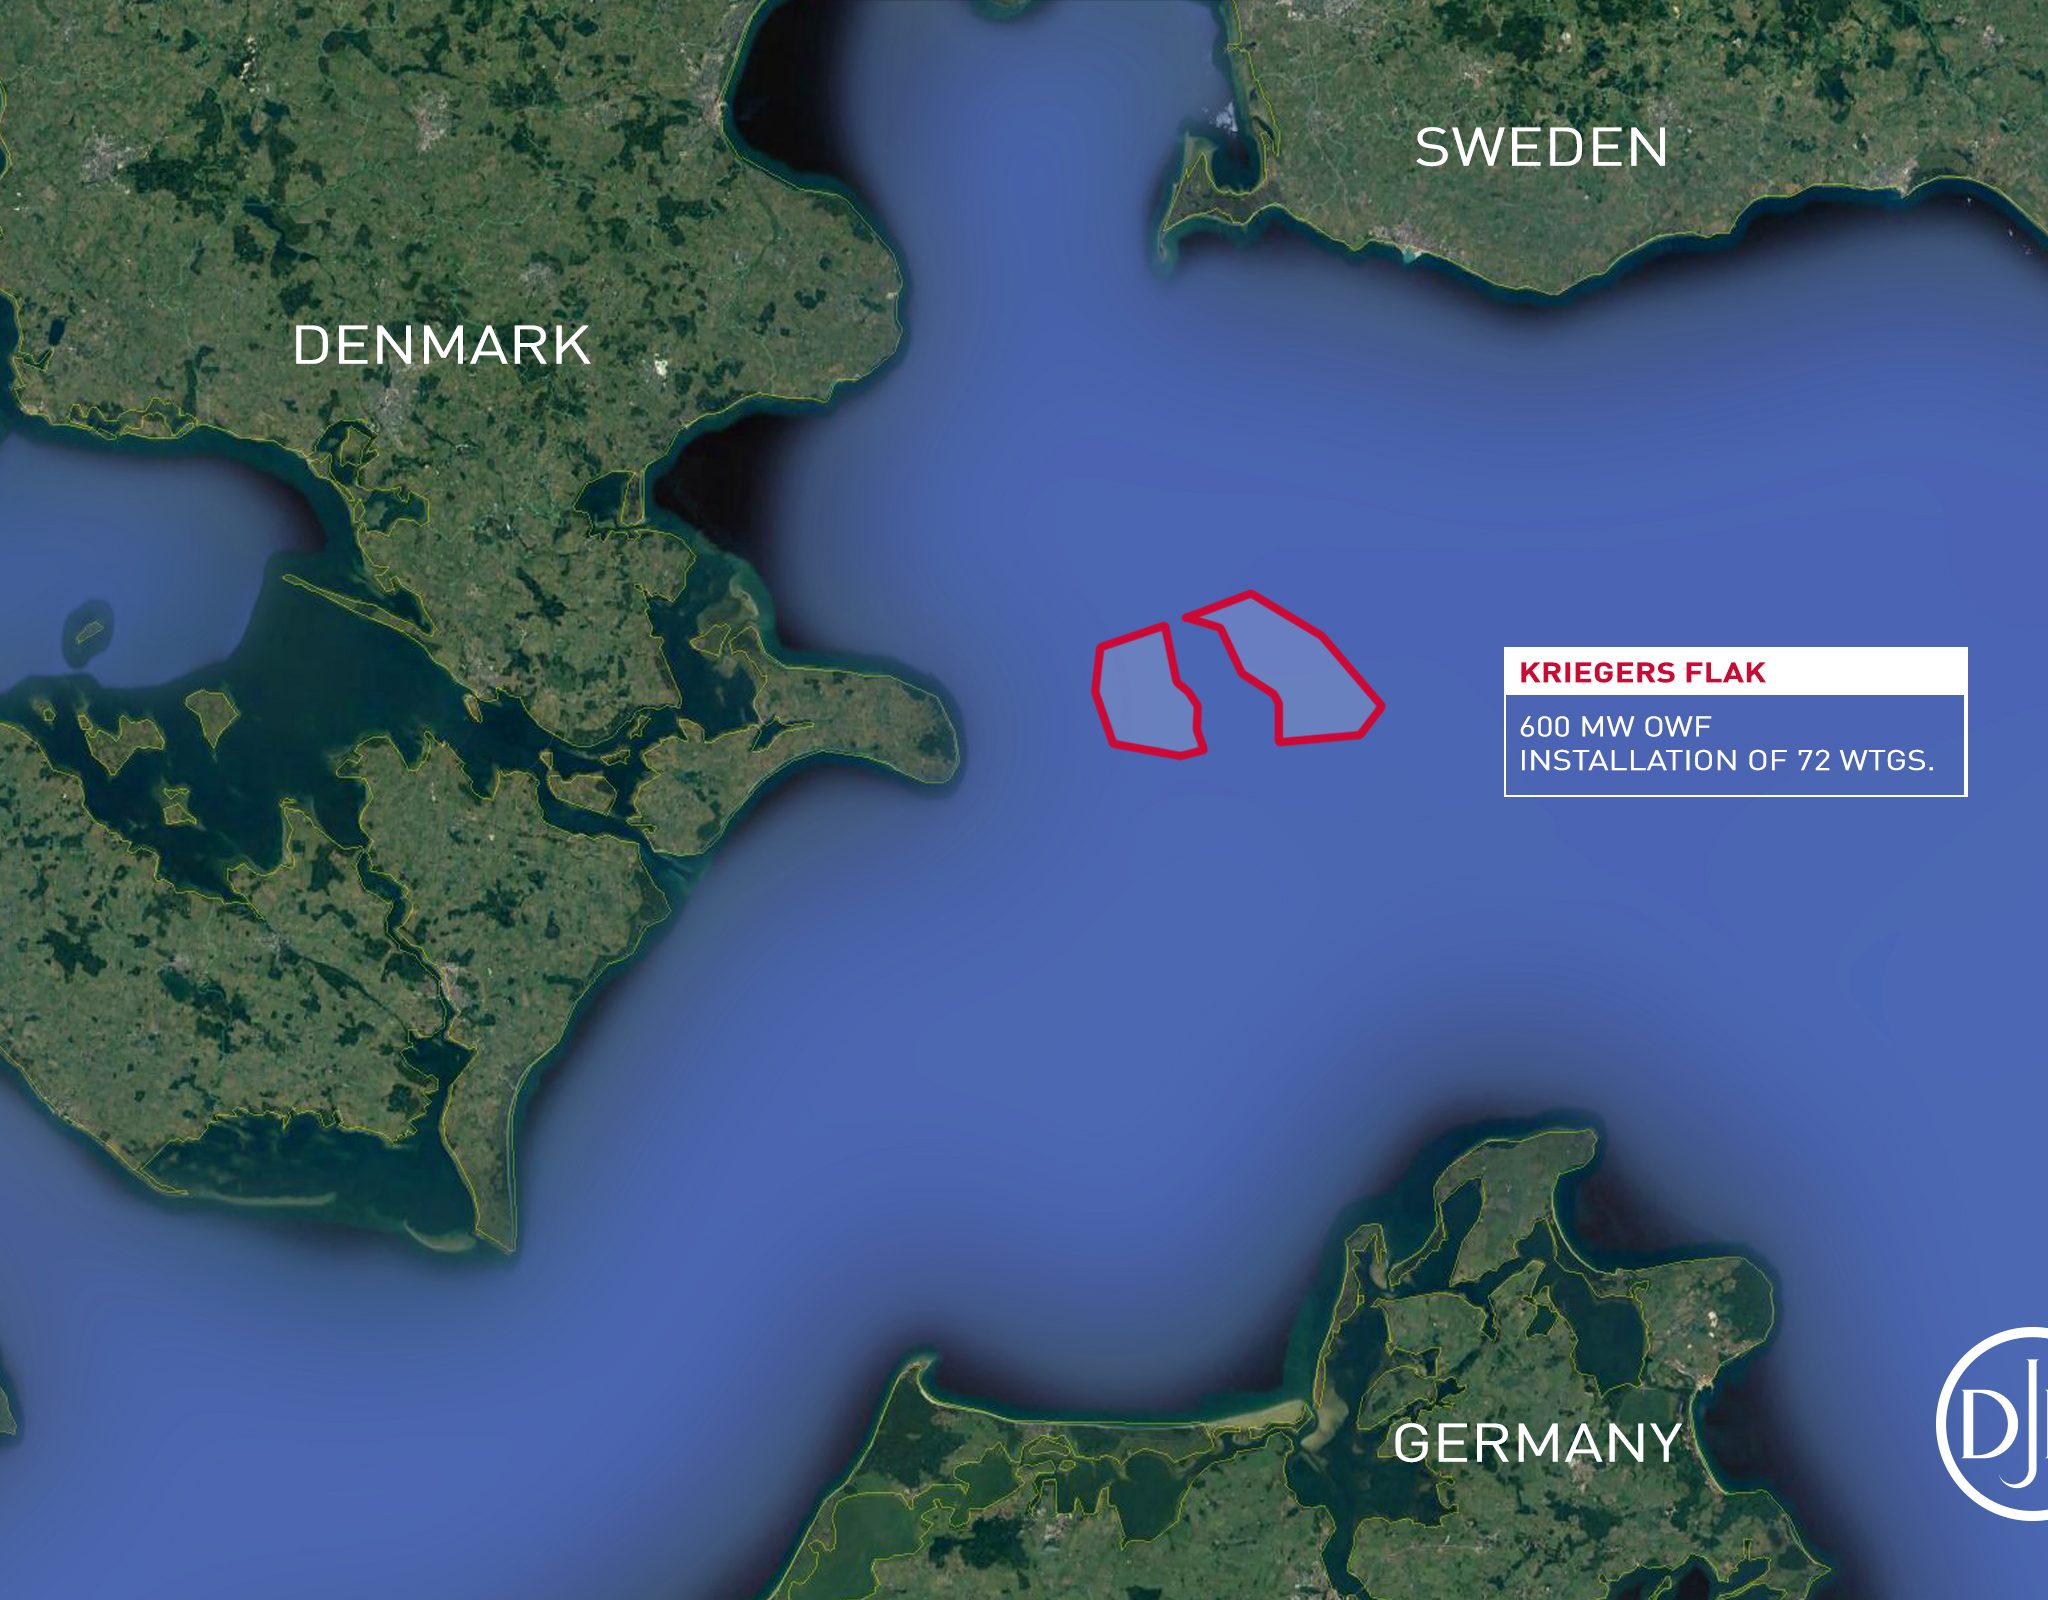 Het Kriegers Flak OWF is gelegen in de Baltische Zee, met waterdieptes die variëren tussen 15 en 30 meter, op 15 kilometer van de kust. (Illustratie Jan de Nul)